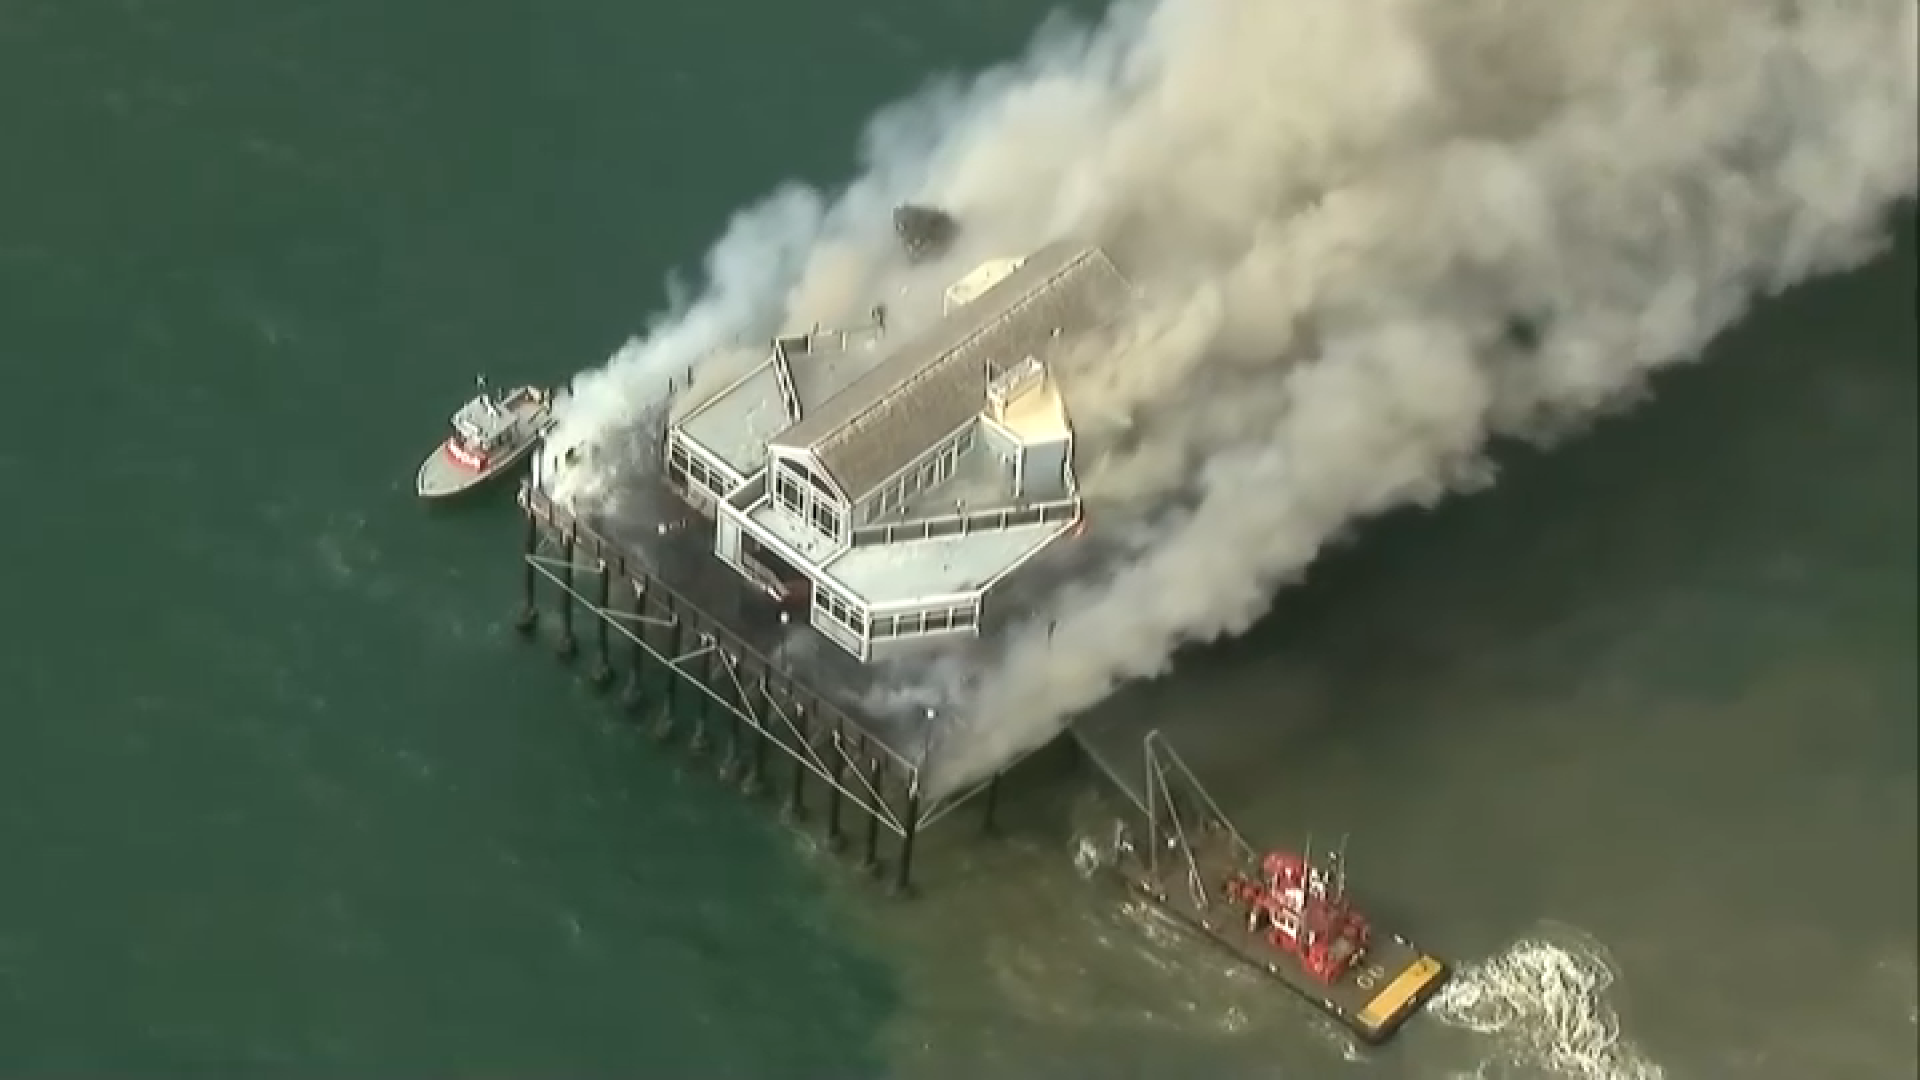 PHOTOS: Fire erupts on Oceanside Pier